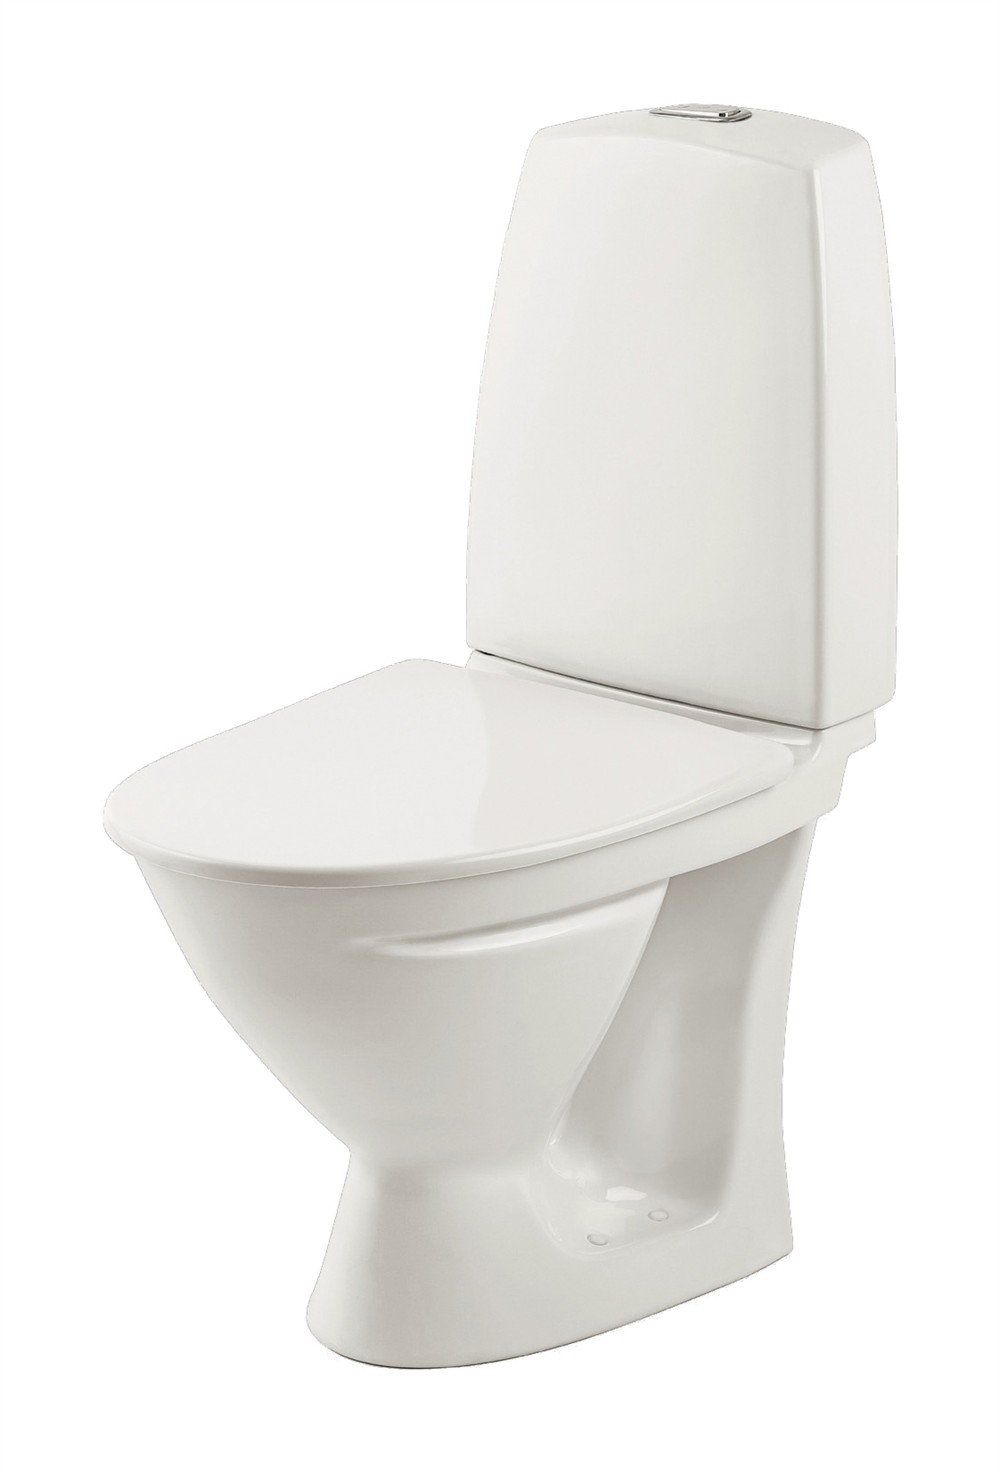 북유럽 욕실 제품 디자인: 이포와 볼라